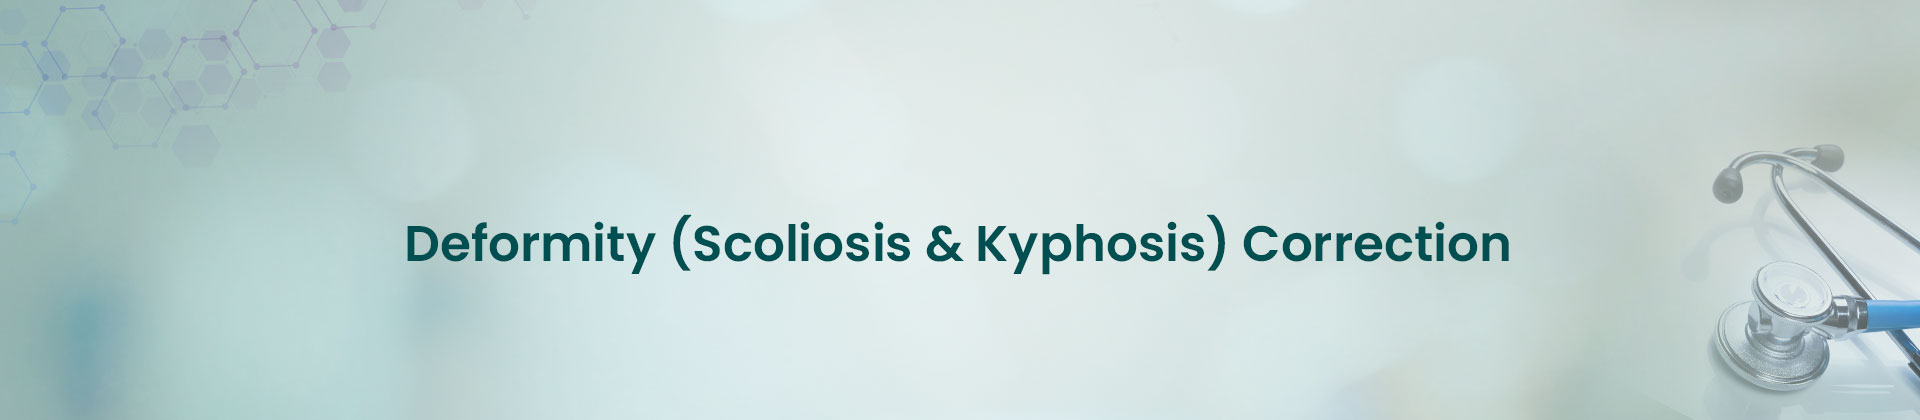 Deformity (Scoliosis & Kyphosis) Correction